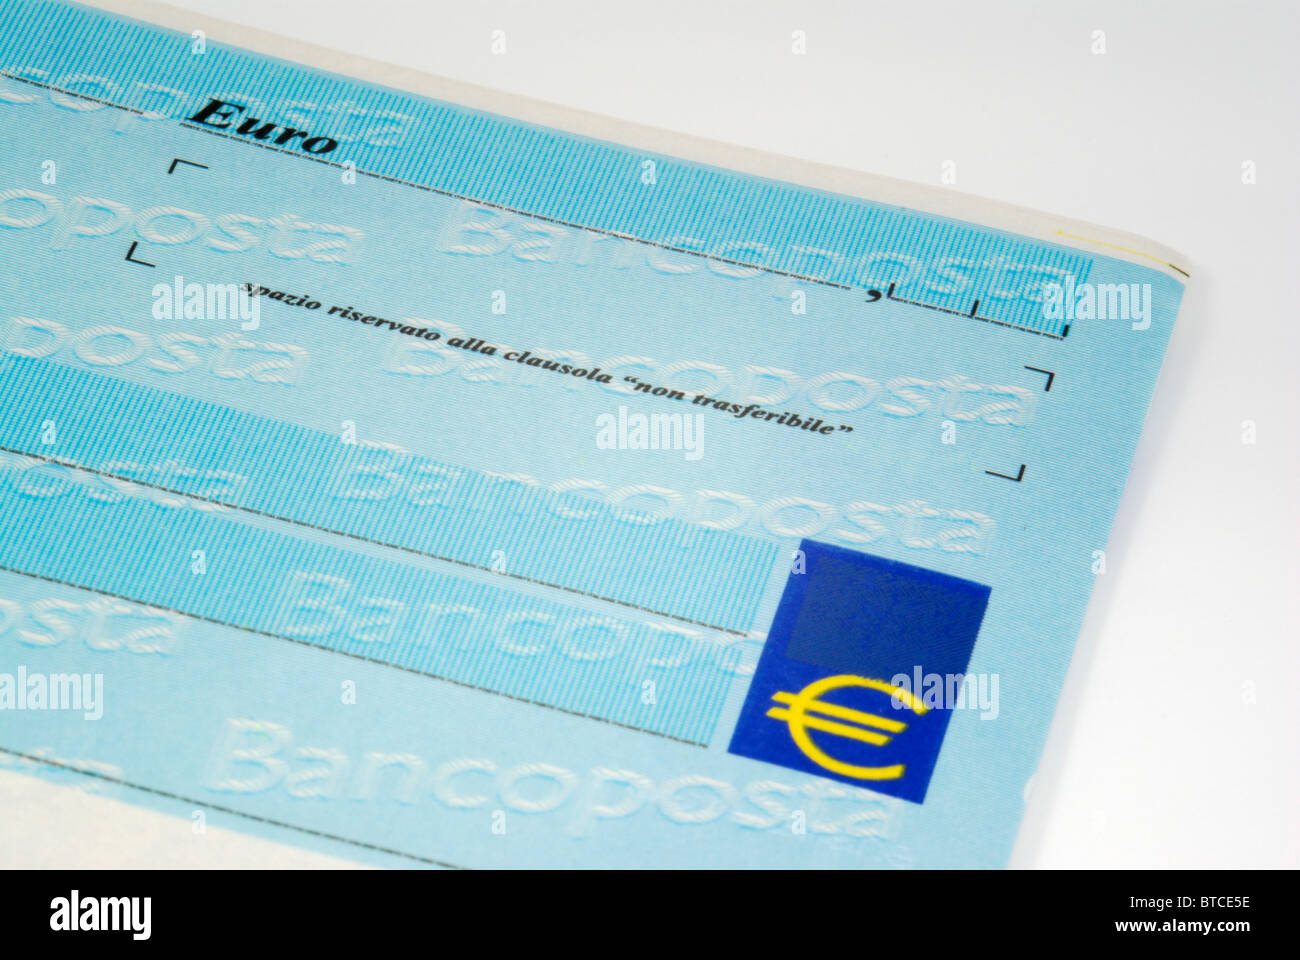 Banco Posta italiano check (controllo) close-up dettaglio Foto Stock